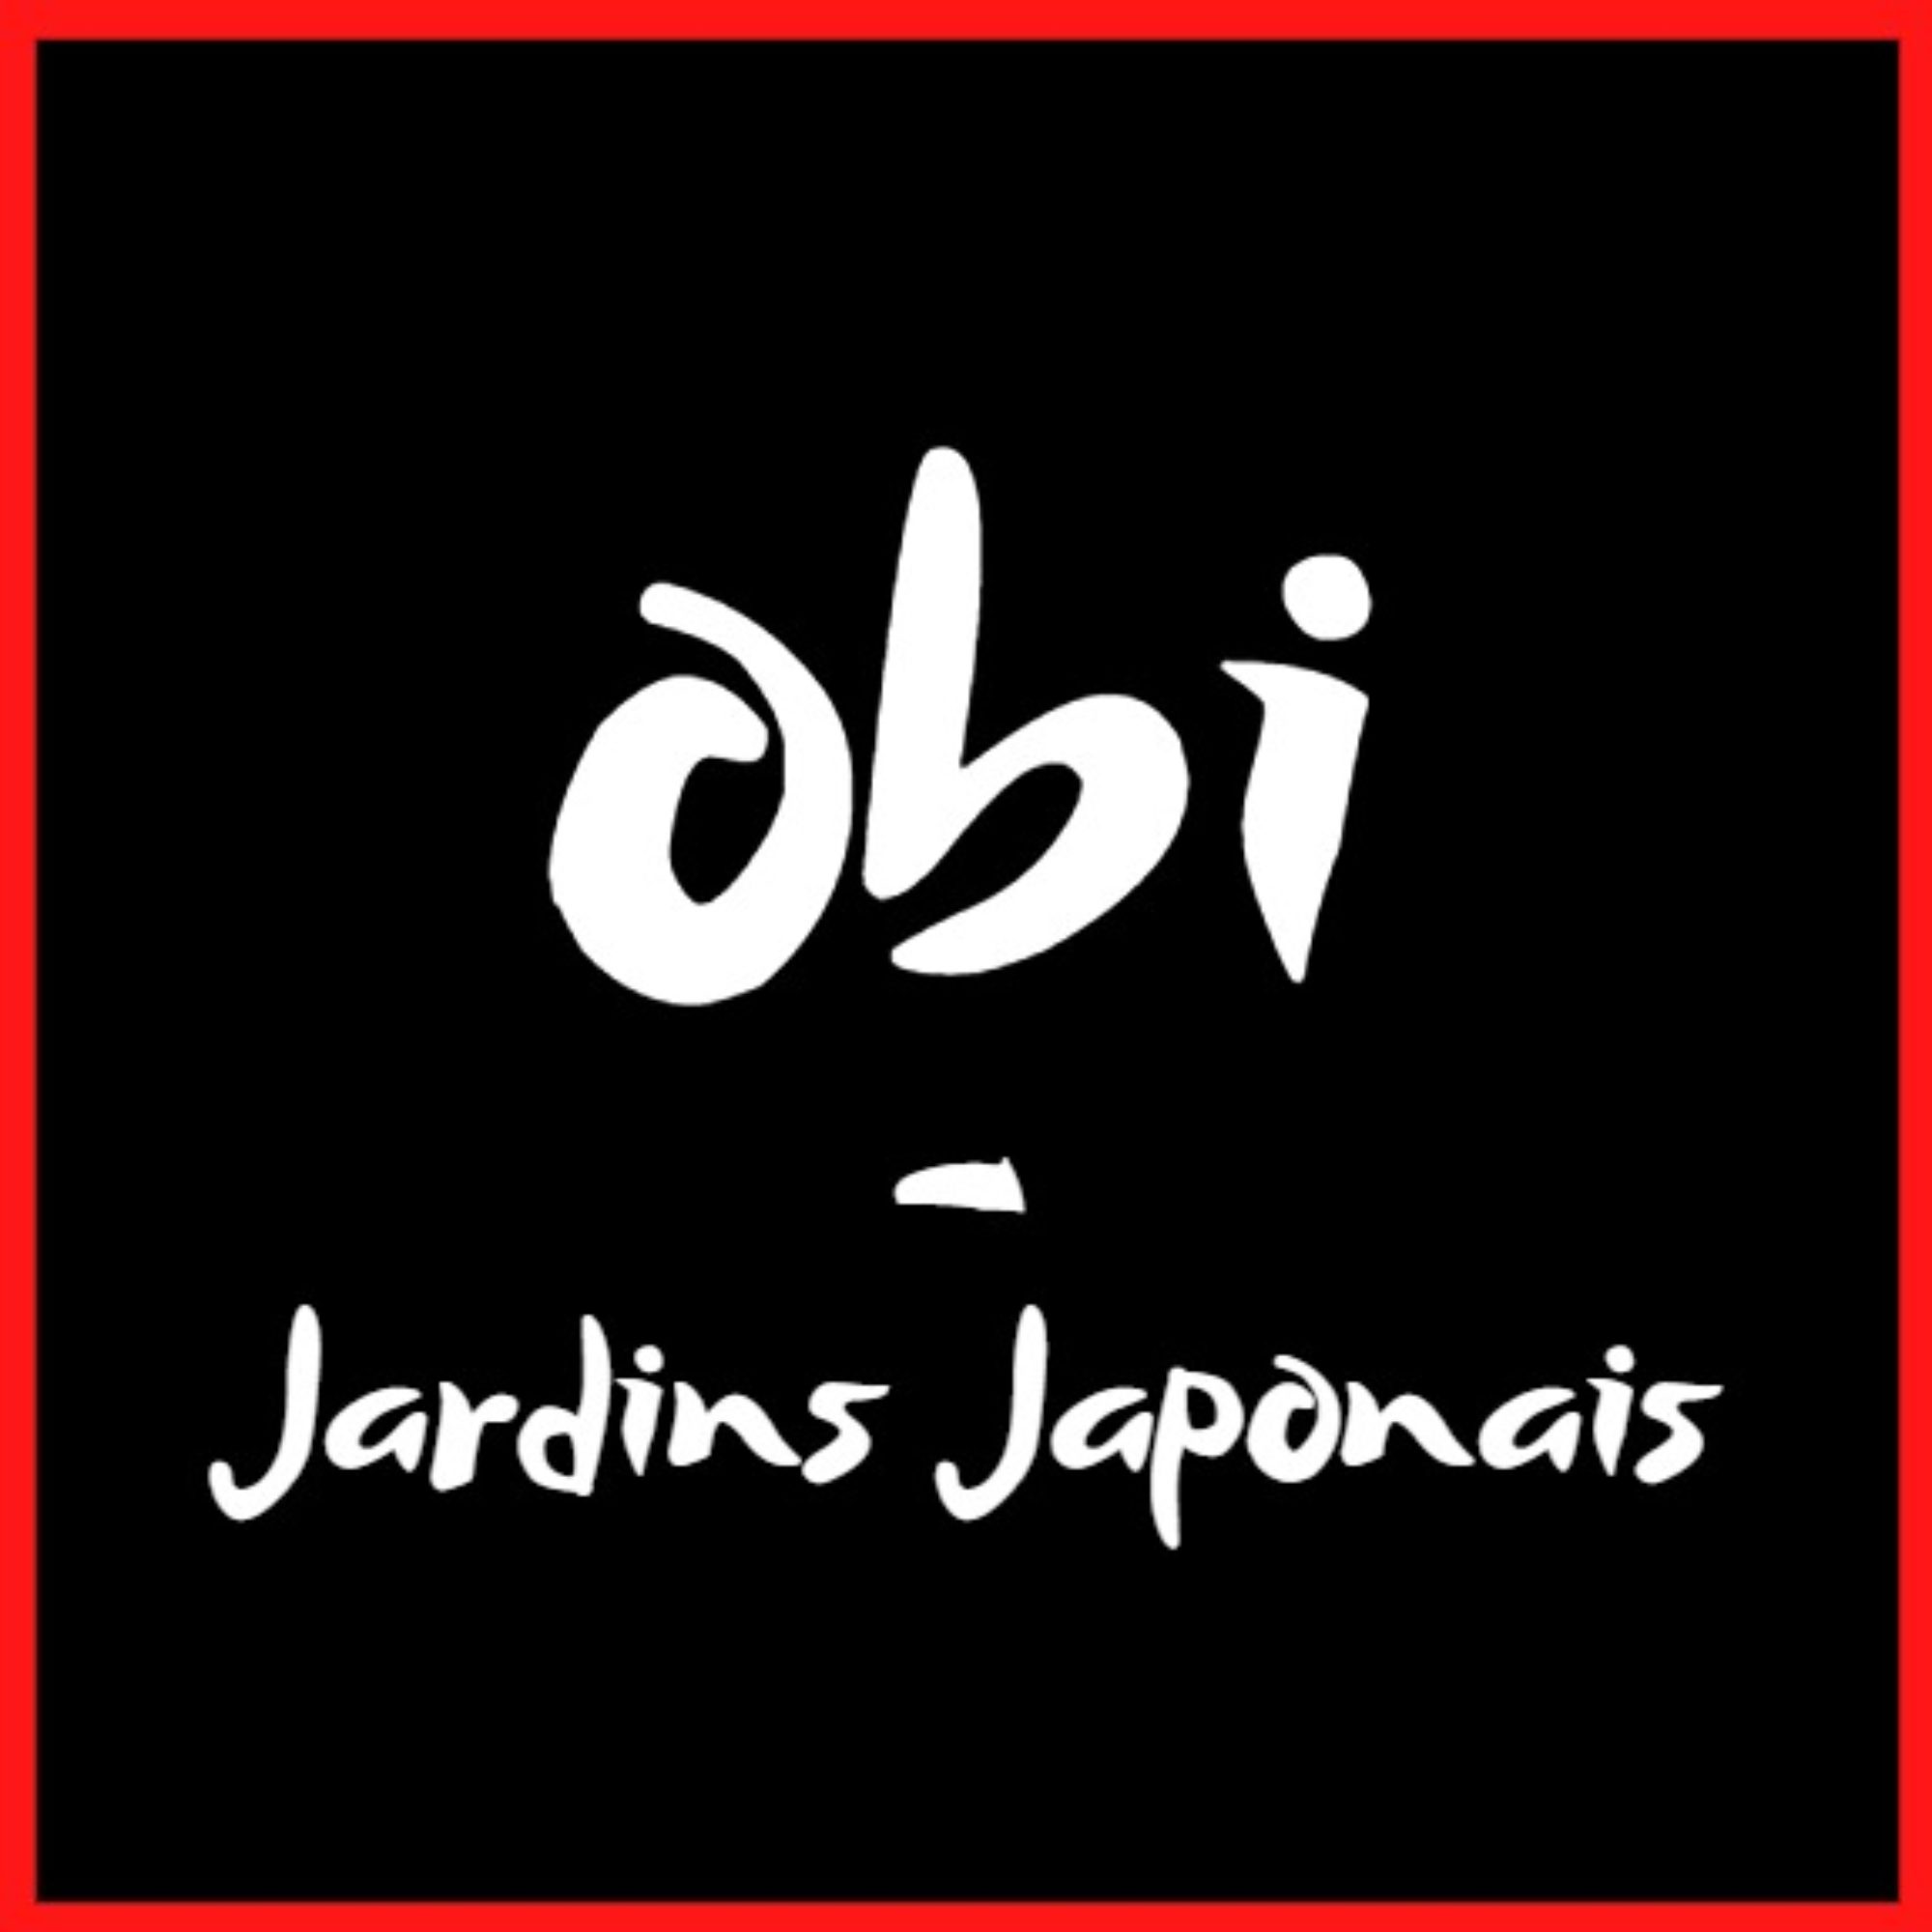 Obi – Jardins japonais